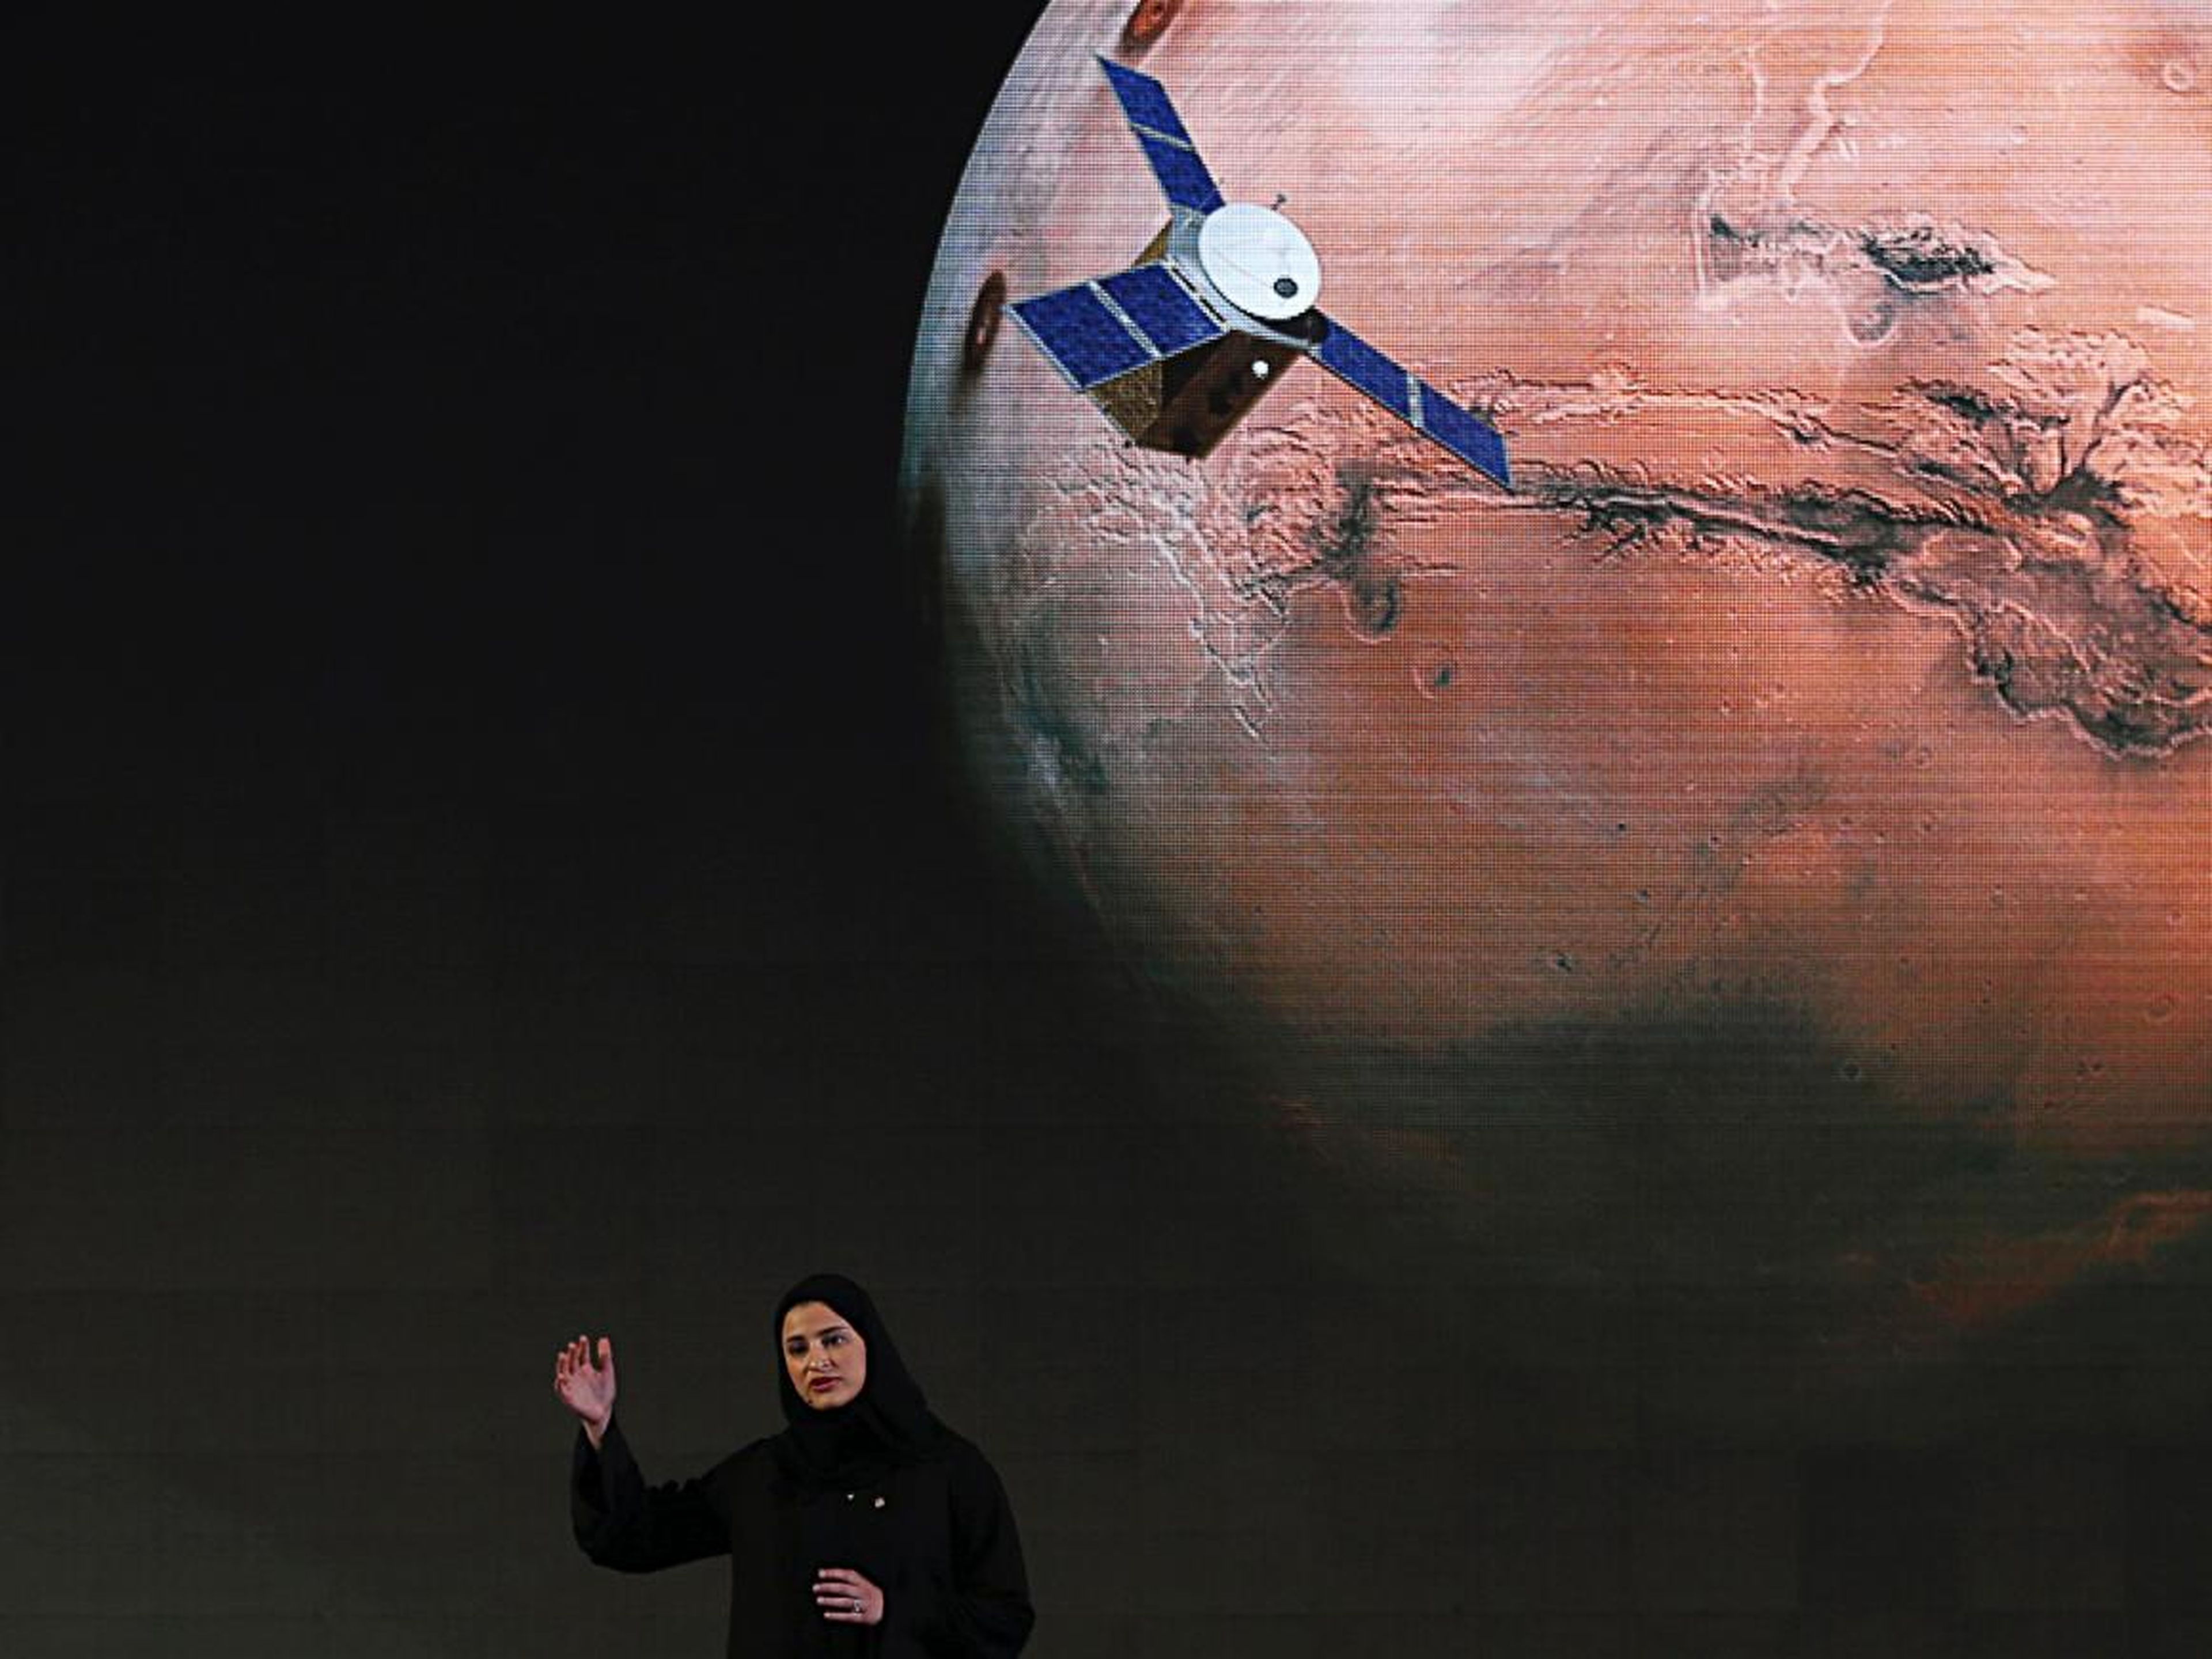 Sarah Amiri, subdirectora de proyecto de la misión a Marte de los Emiratos Árabes Unidos, habla sobre el proyecto, llamado "Hope" o "al-Amal" en árabe, en Dubai, Emiratos Árabes Unidos, el 6 de mayo de 2015.